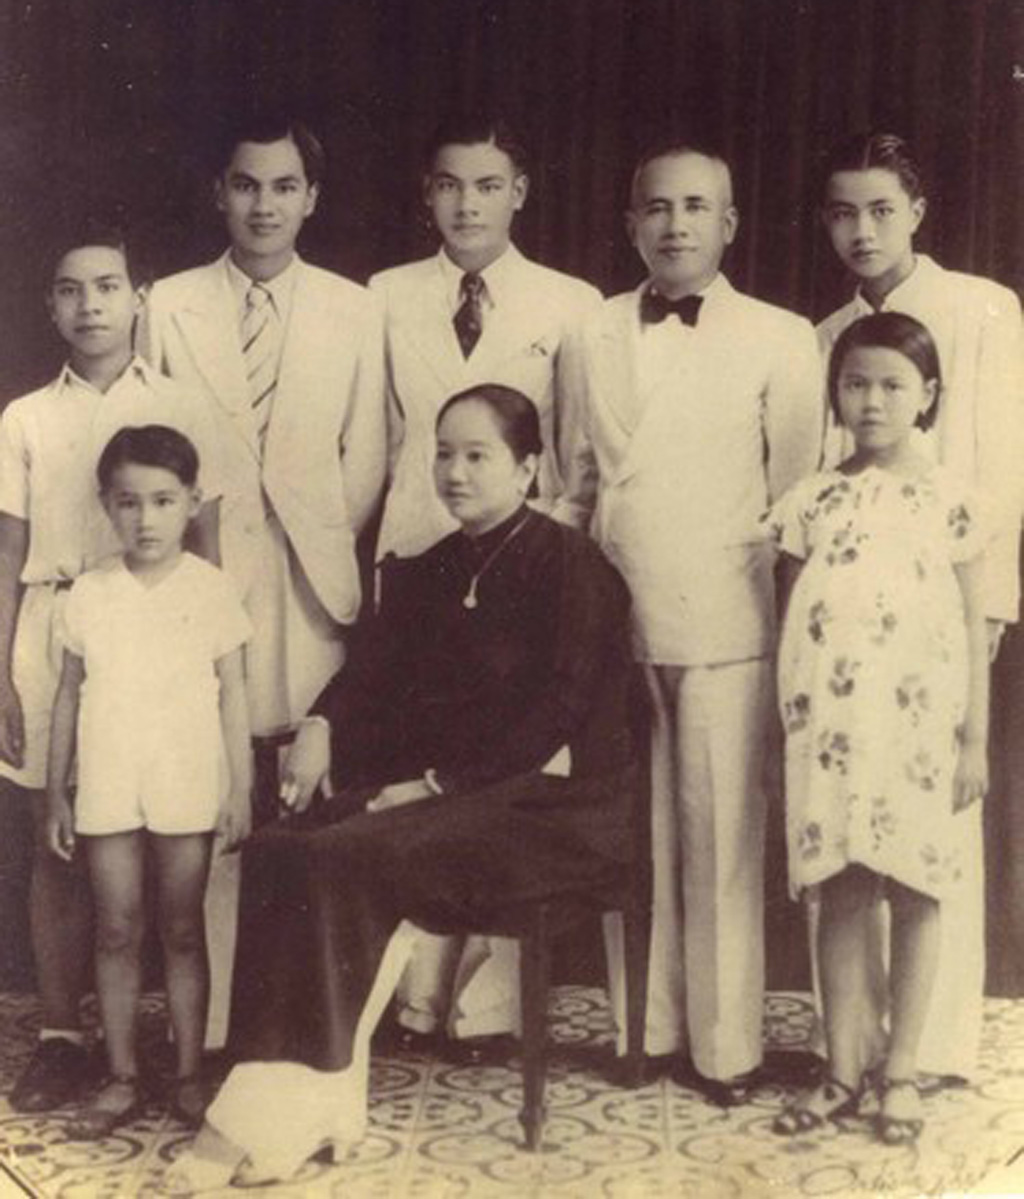 Chuyện ít biết về Sài Gòn xưa: Trương Văn Bền, “chỉ huy trưởng kỹ nghệ” đầu tiên1